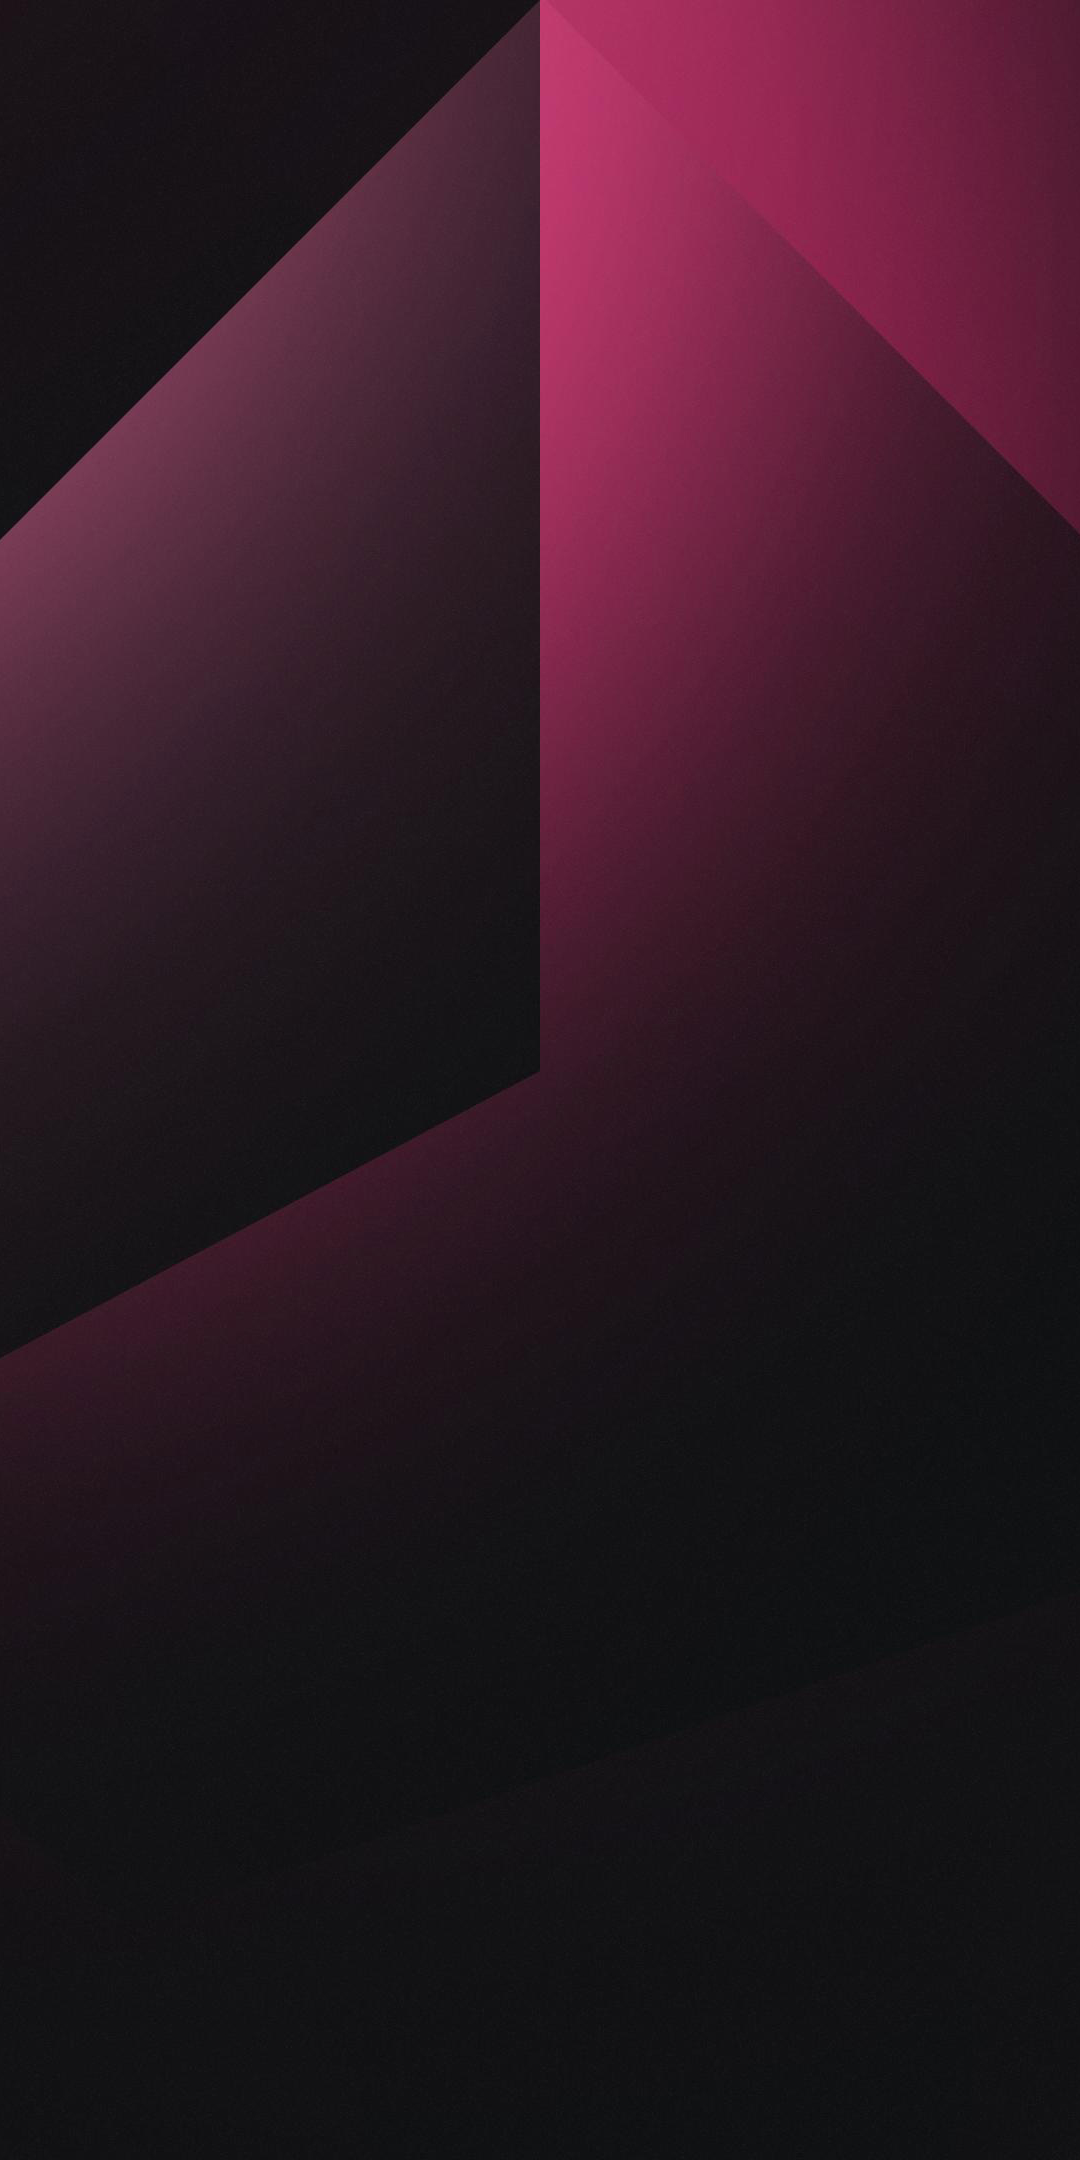 Abstract, dark, gradient, pink, 1080x2160 wallpaper